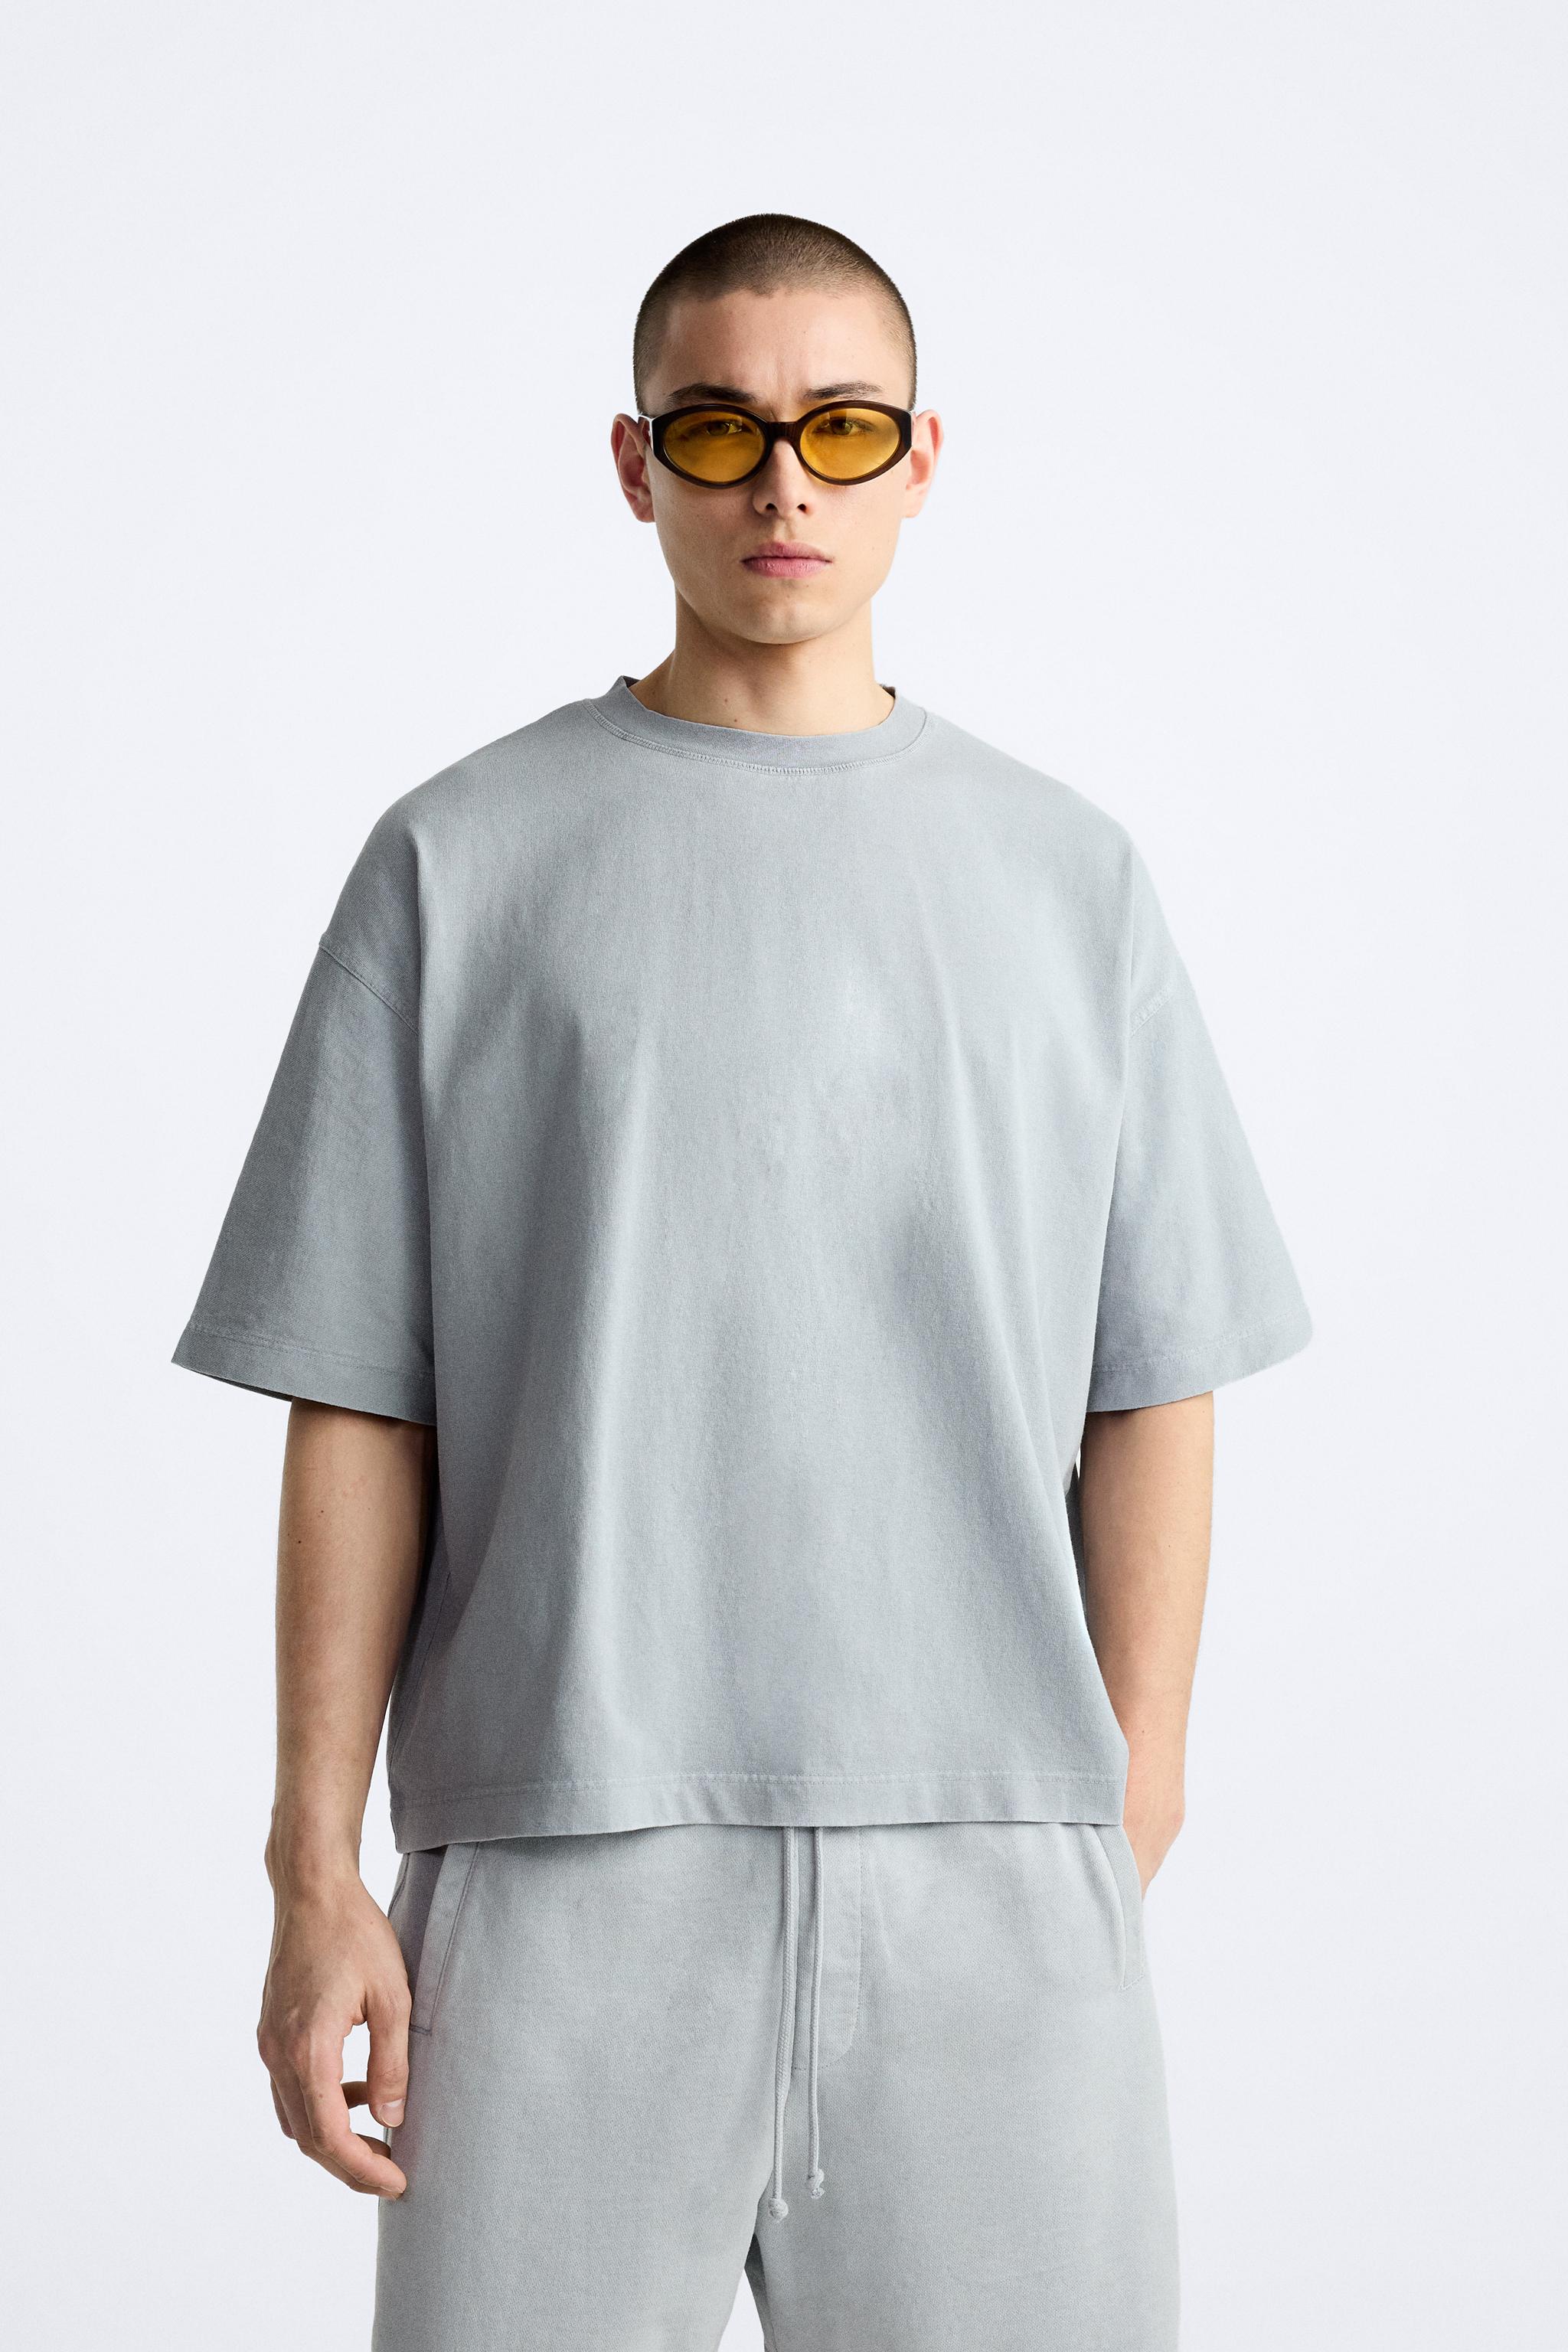 グレーTシャツ – メンズ | 最新コレクション | ZARA 日本